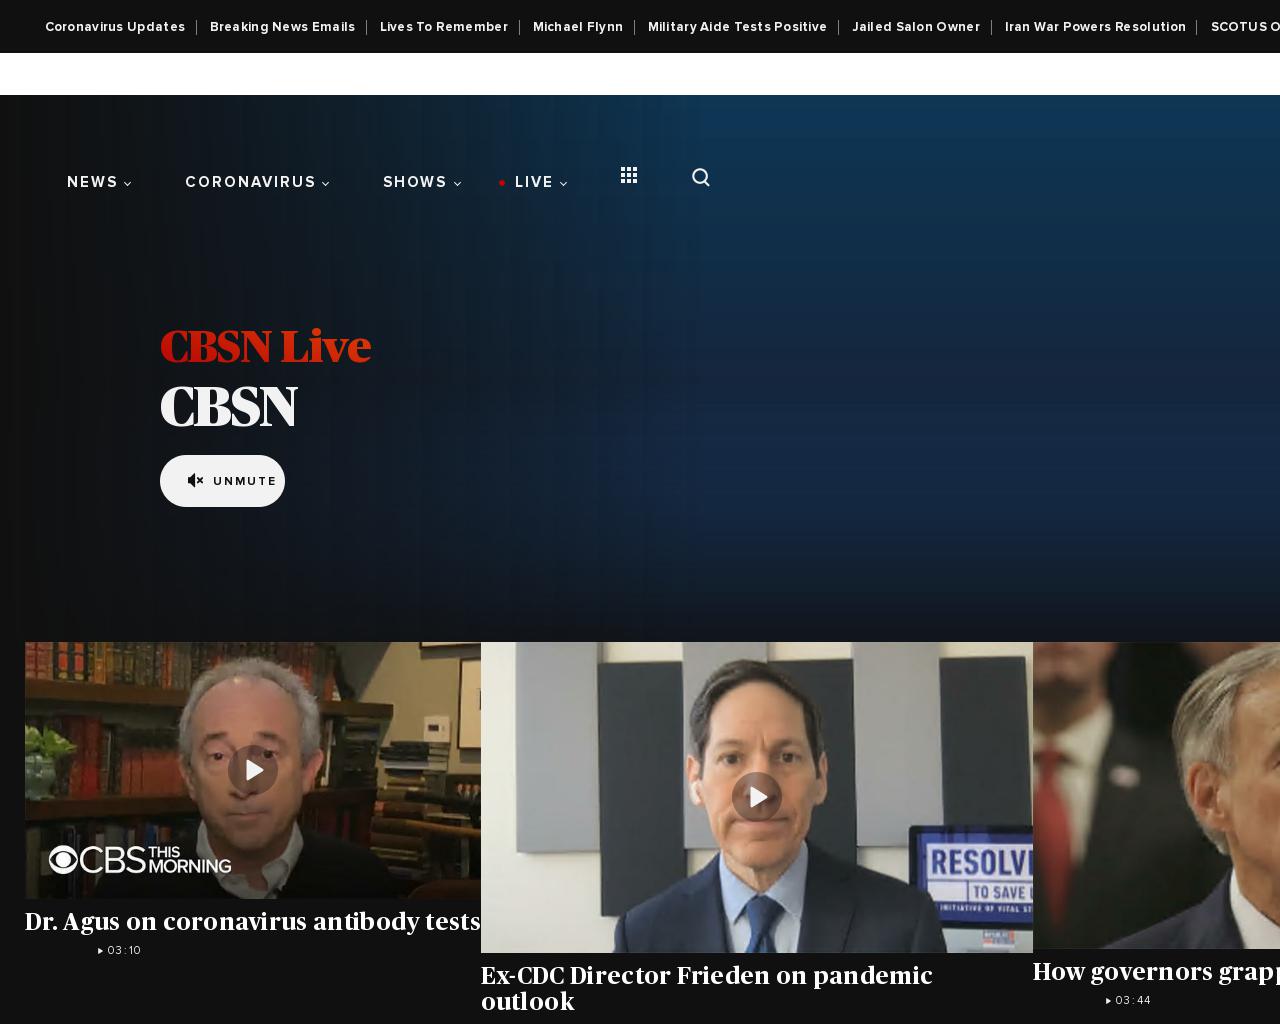 cbsnews.com